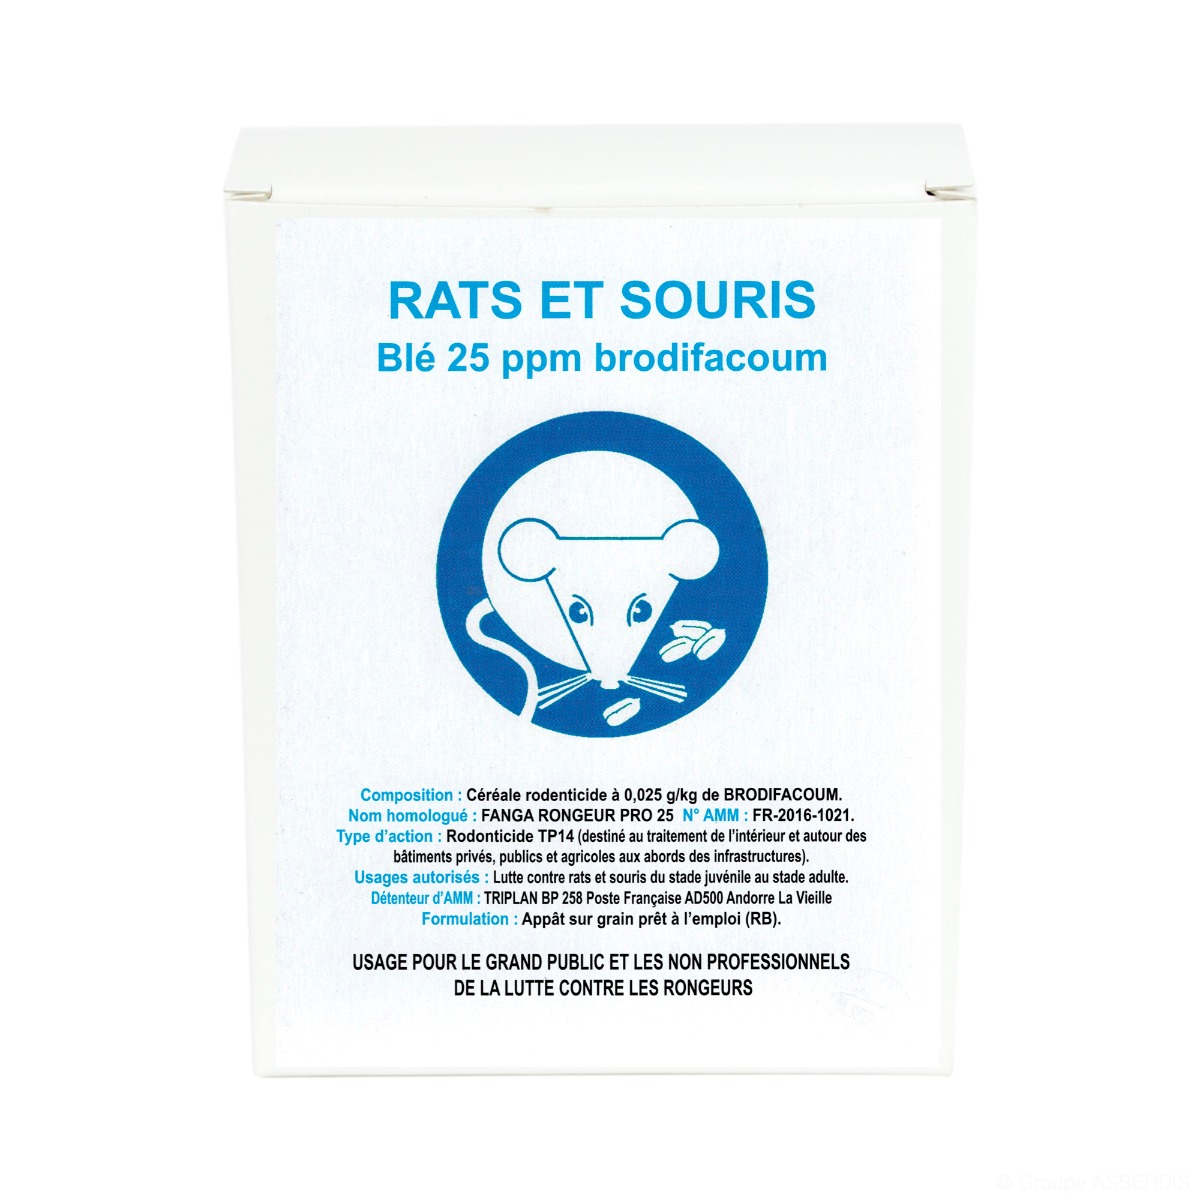 Les 4 meilleurs répulsifs contre les souris et les rats - PPM